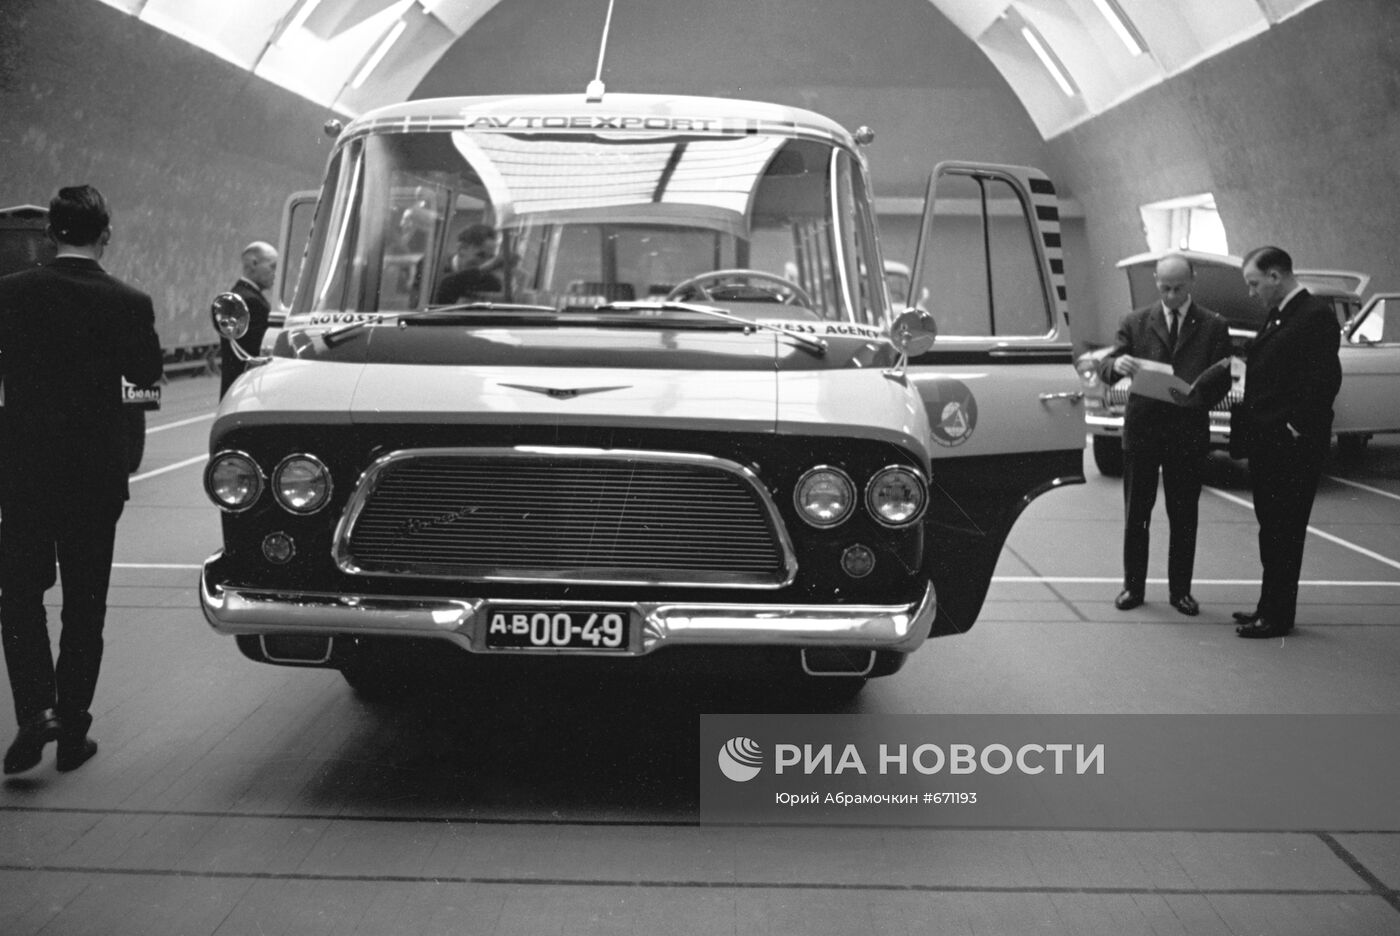 Советский автомобиль "Юность" на выставке в Осло